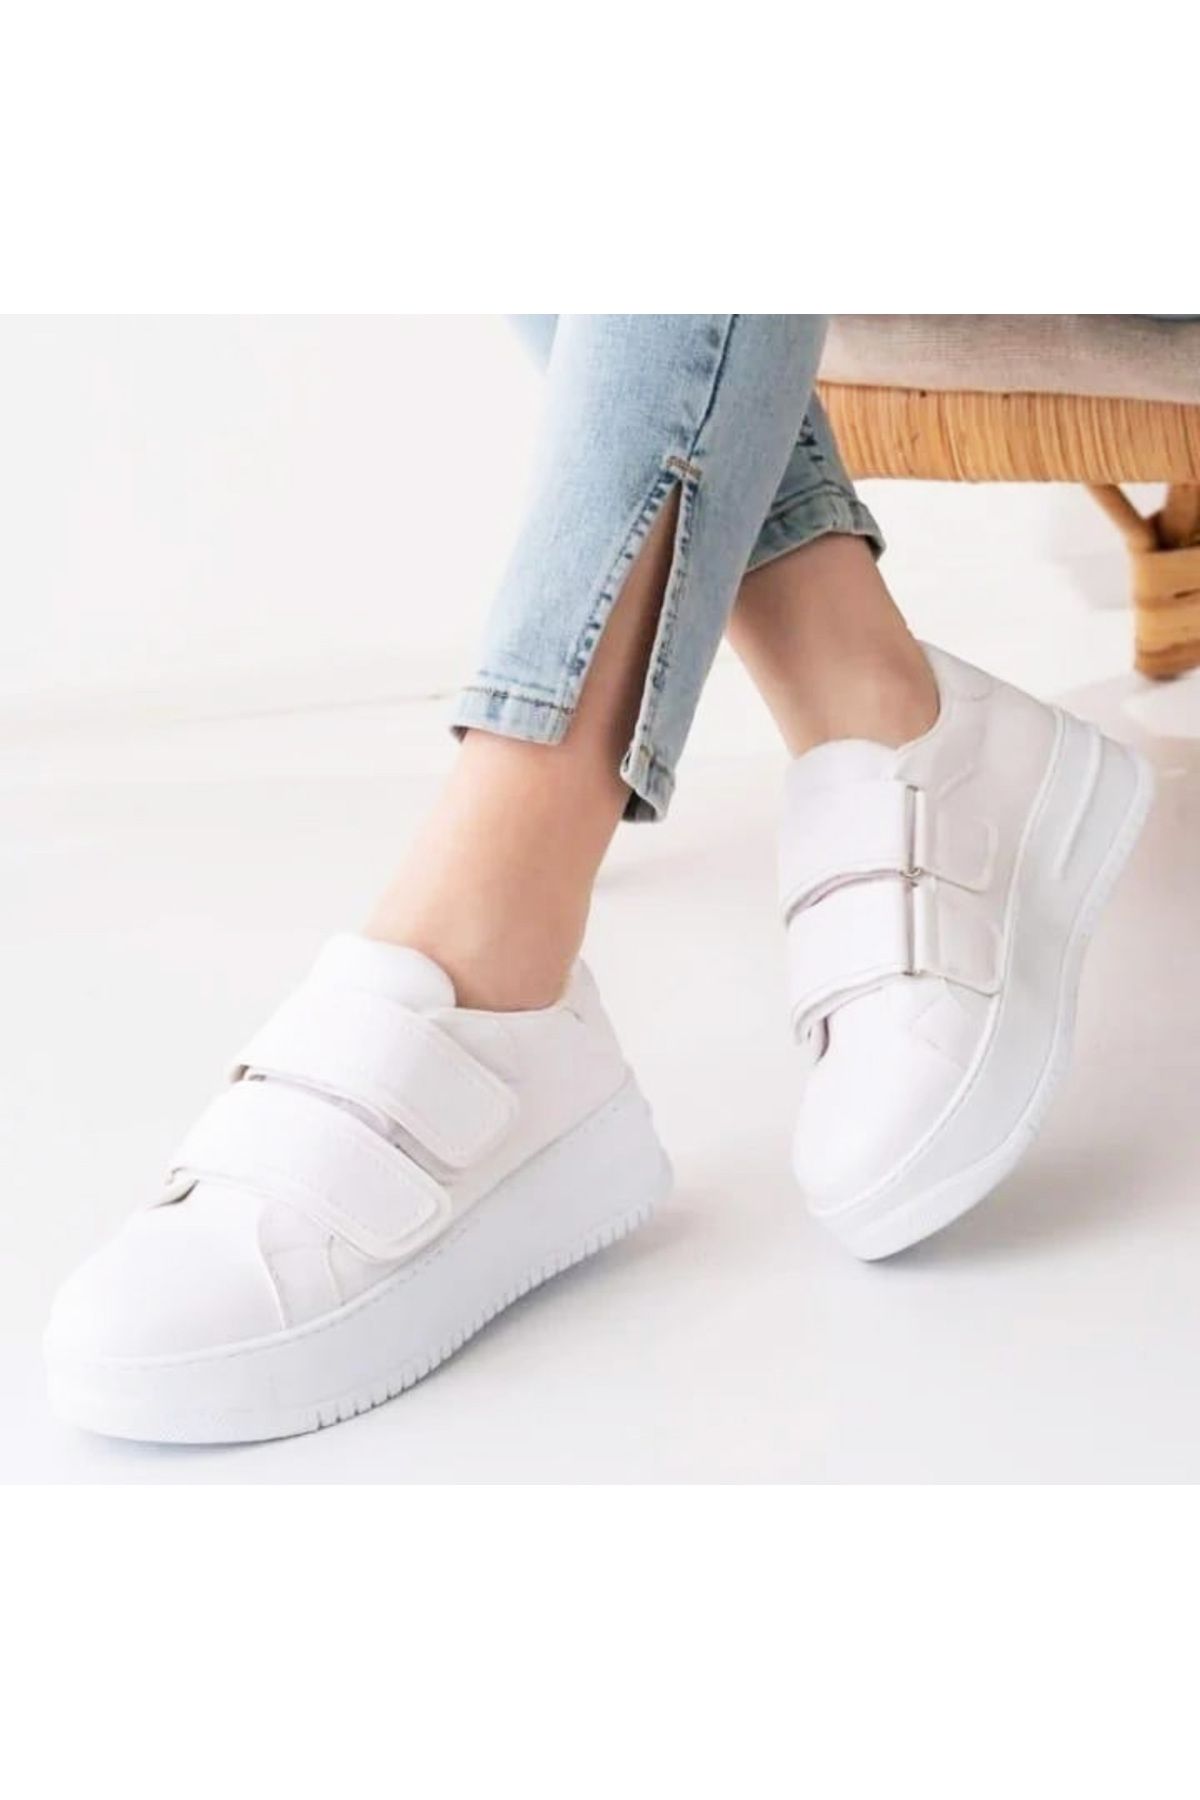 Afilli Kadın Beyaz Kalın Platform Dolgu Taban Cırt Cırtlı Sneaker Yürüyüş Günlük Outdo Spor Ayakkabı